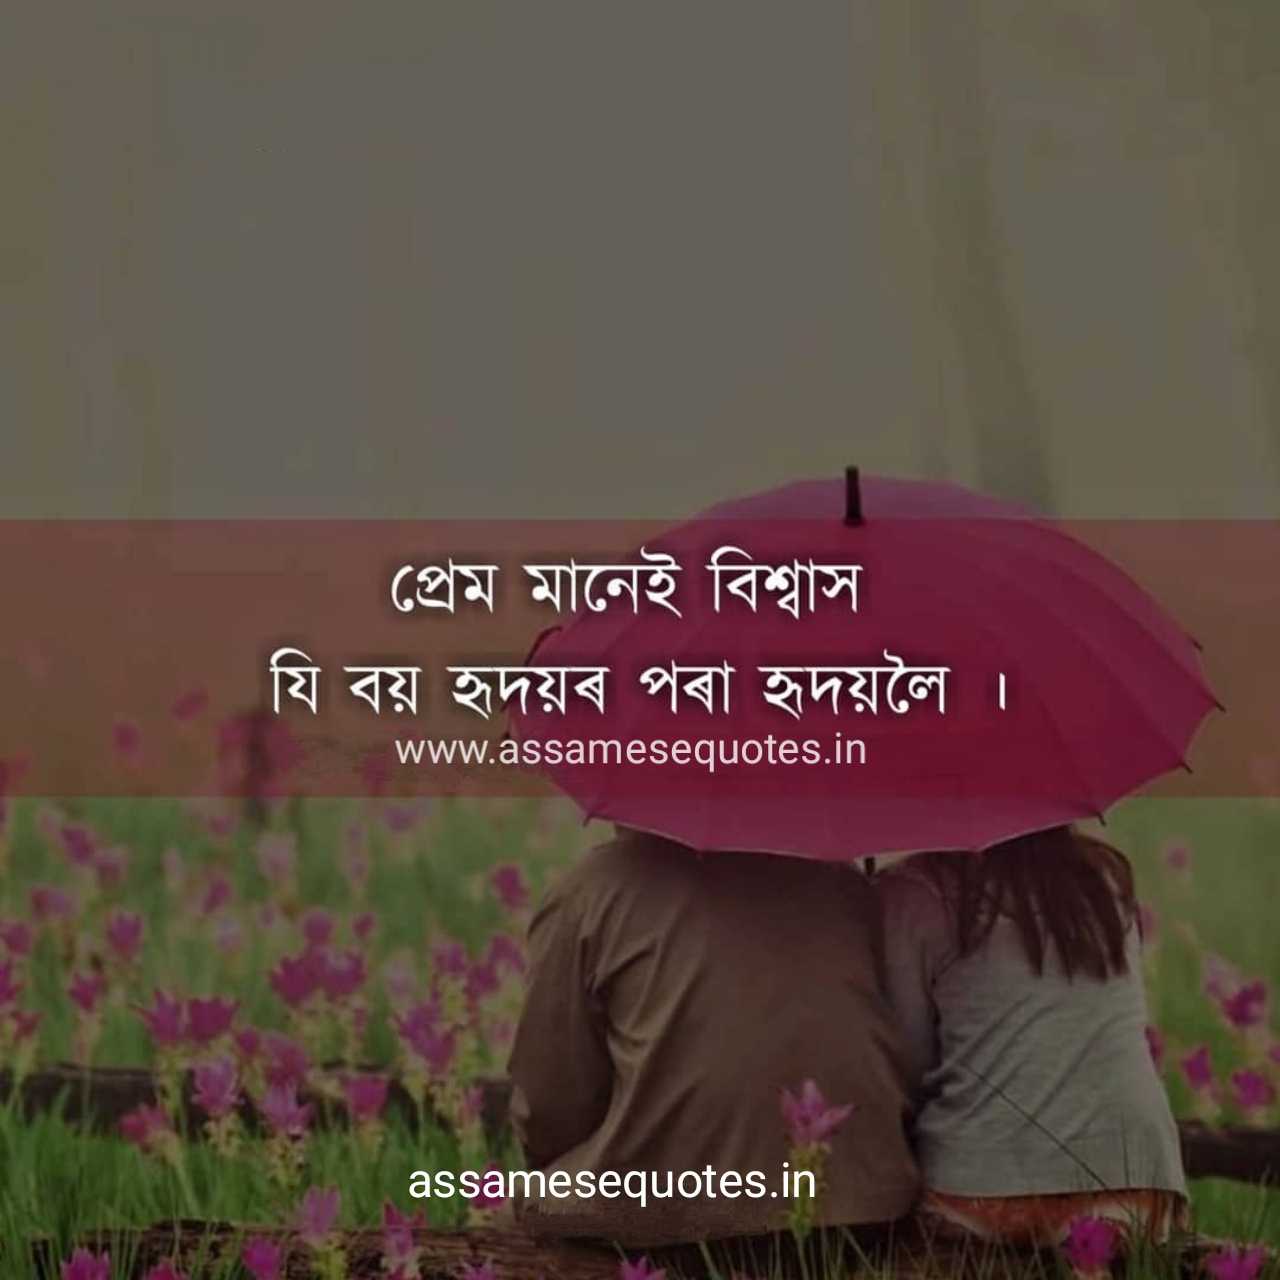 Assamese heart touching love status